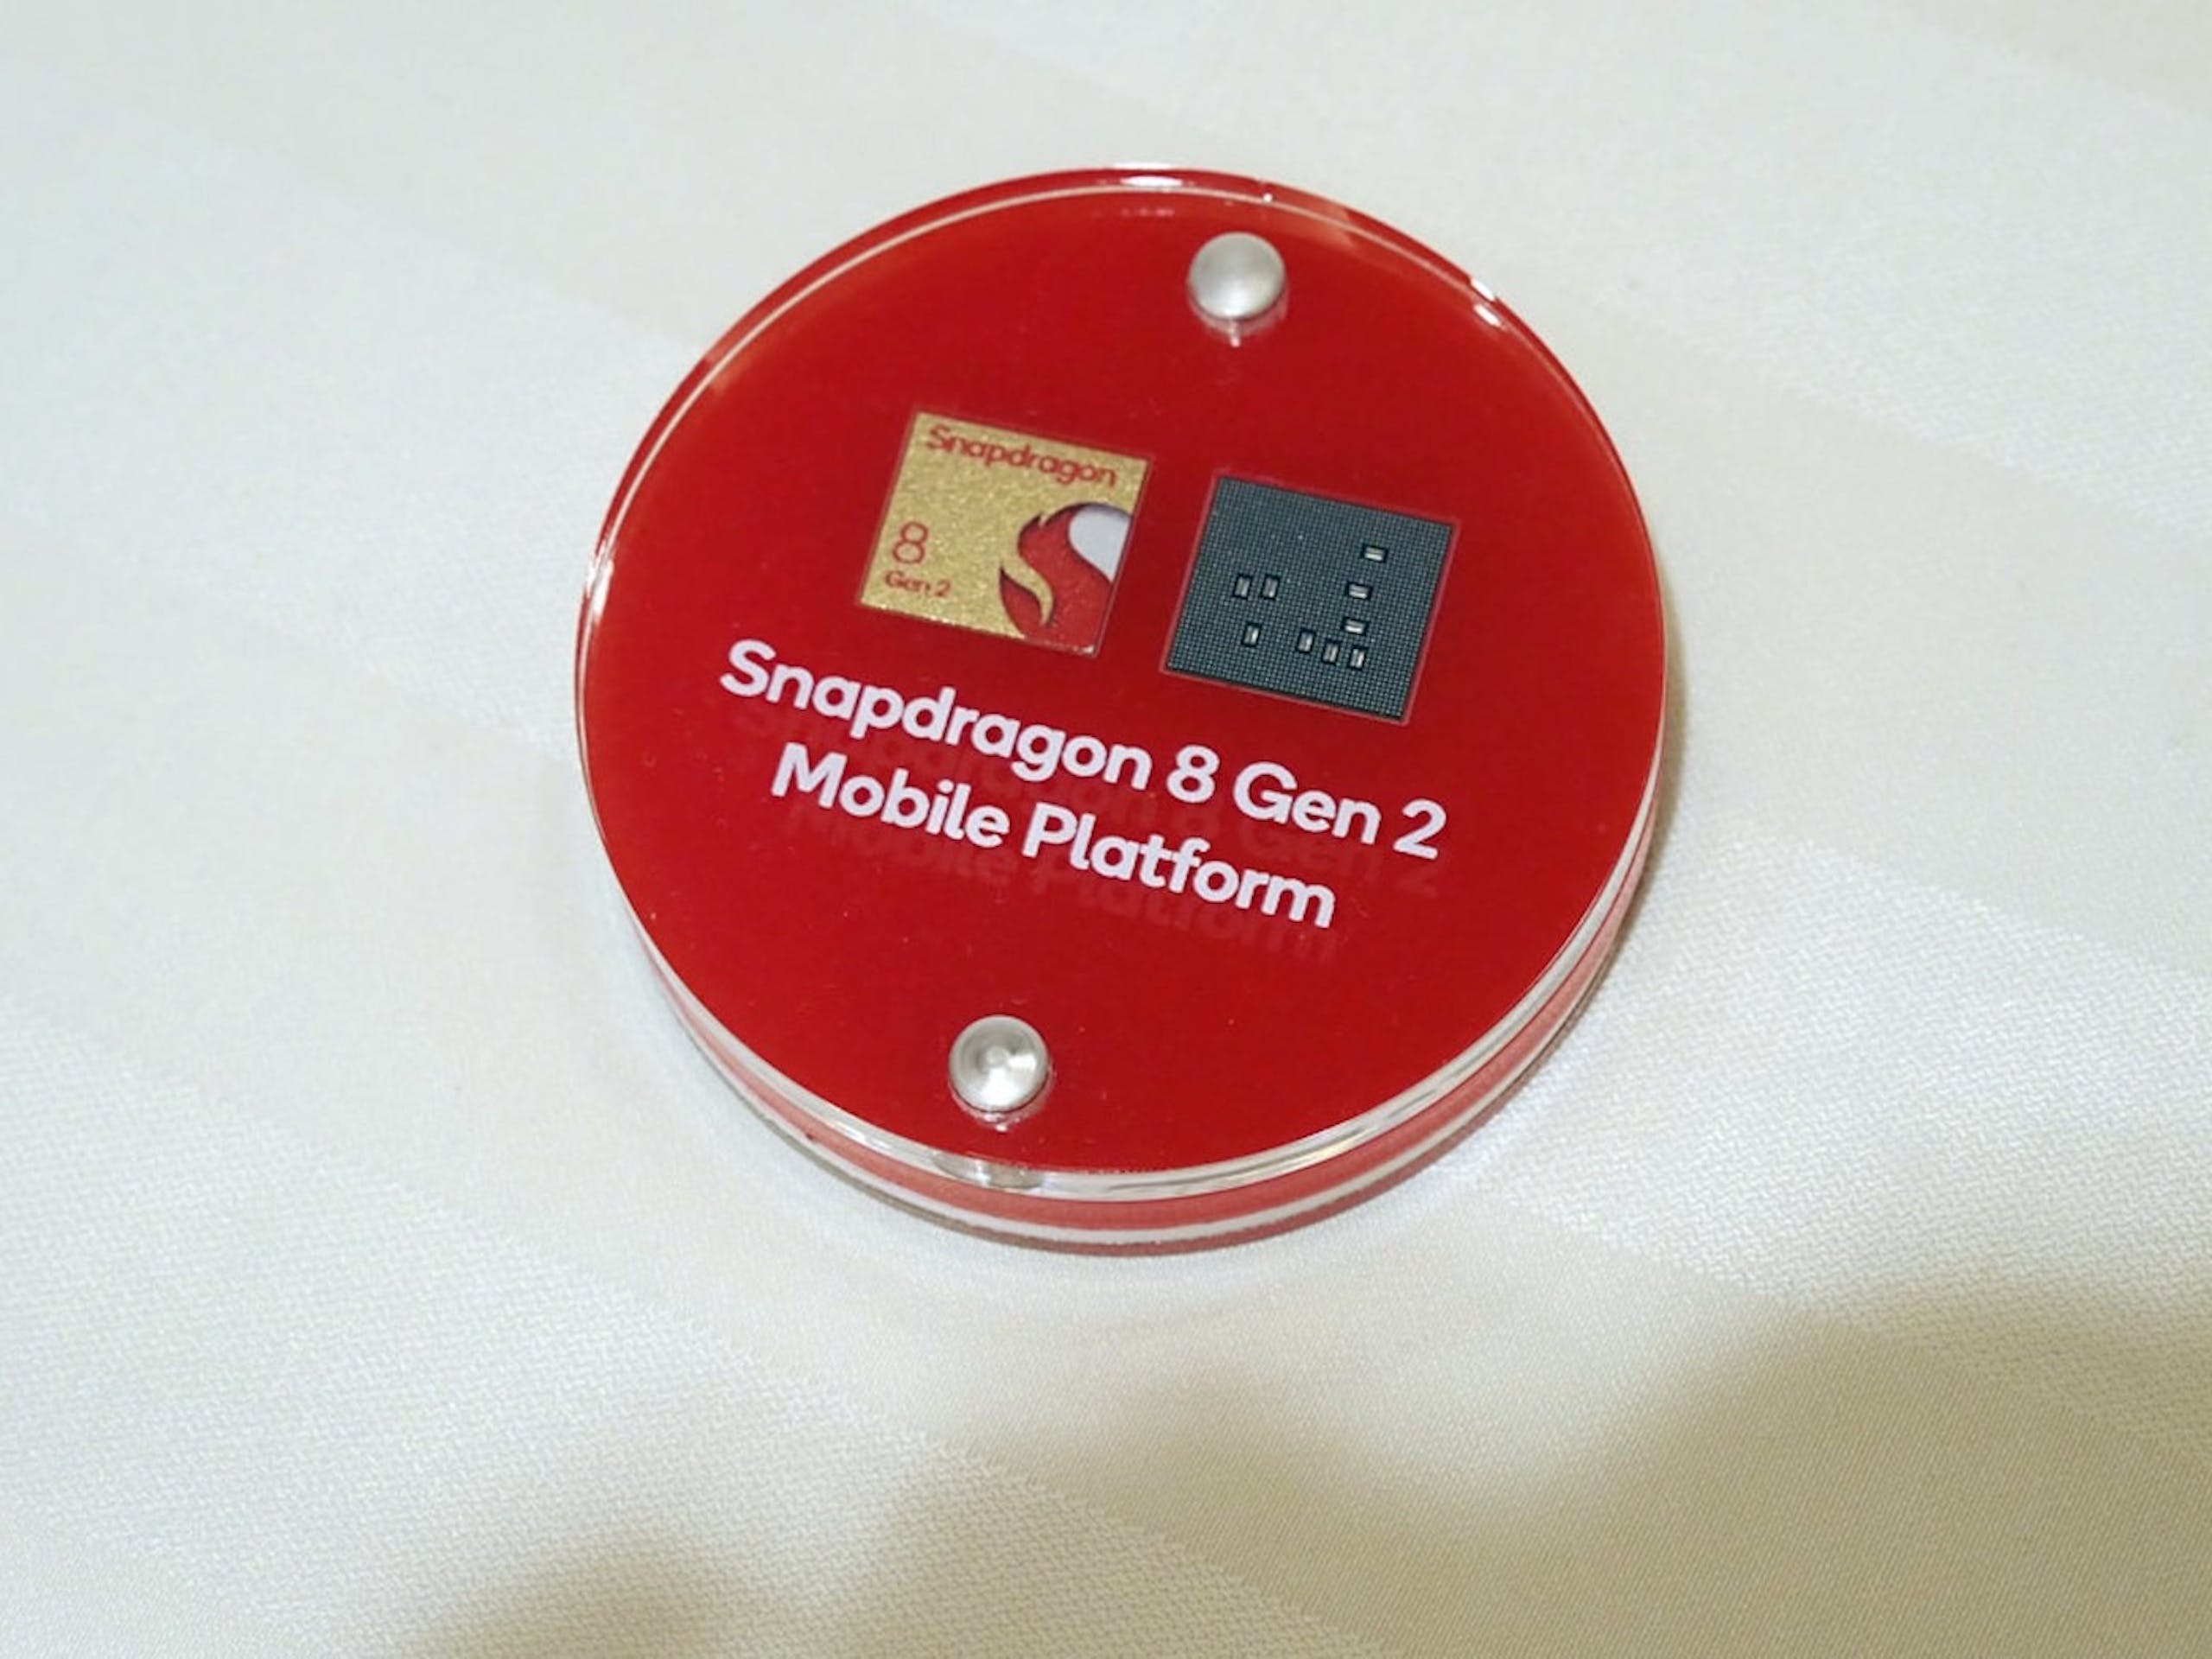 照片中提到了Snapdragon、8、Gen 2，包含了硬件、高通金魚草、三星、高通公司、手機